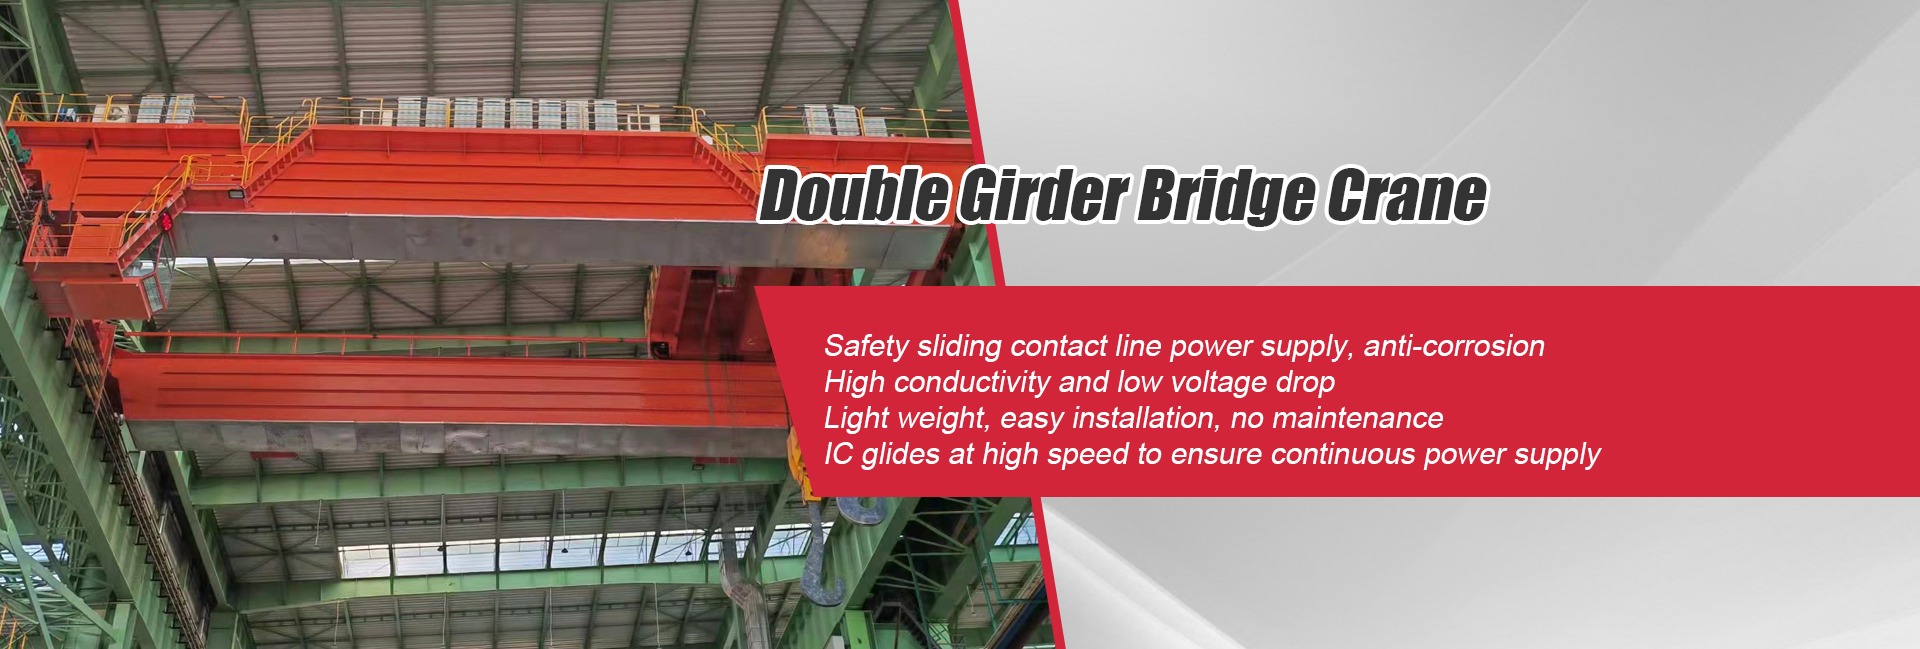 double girder bridge crane